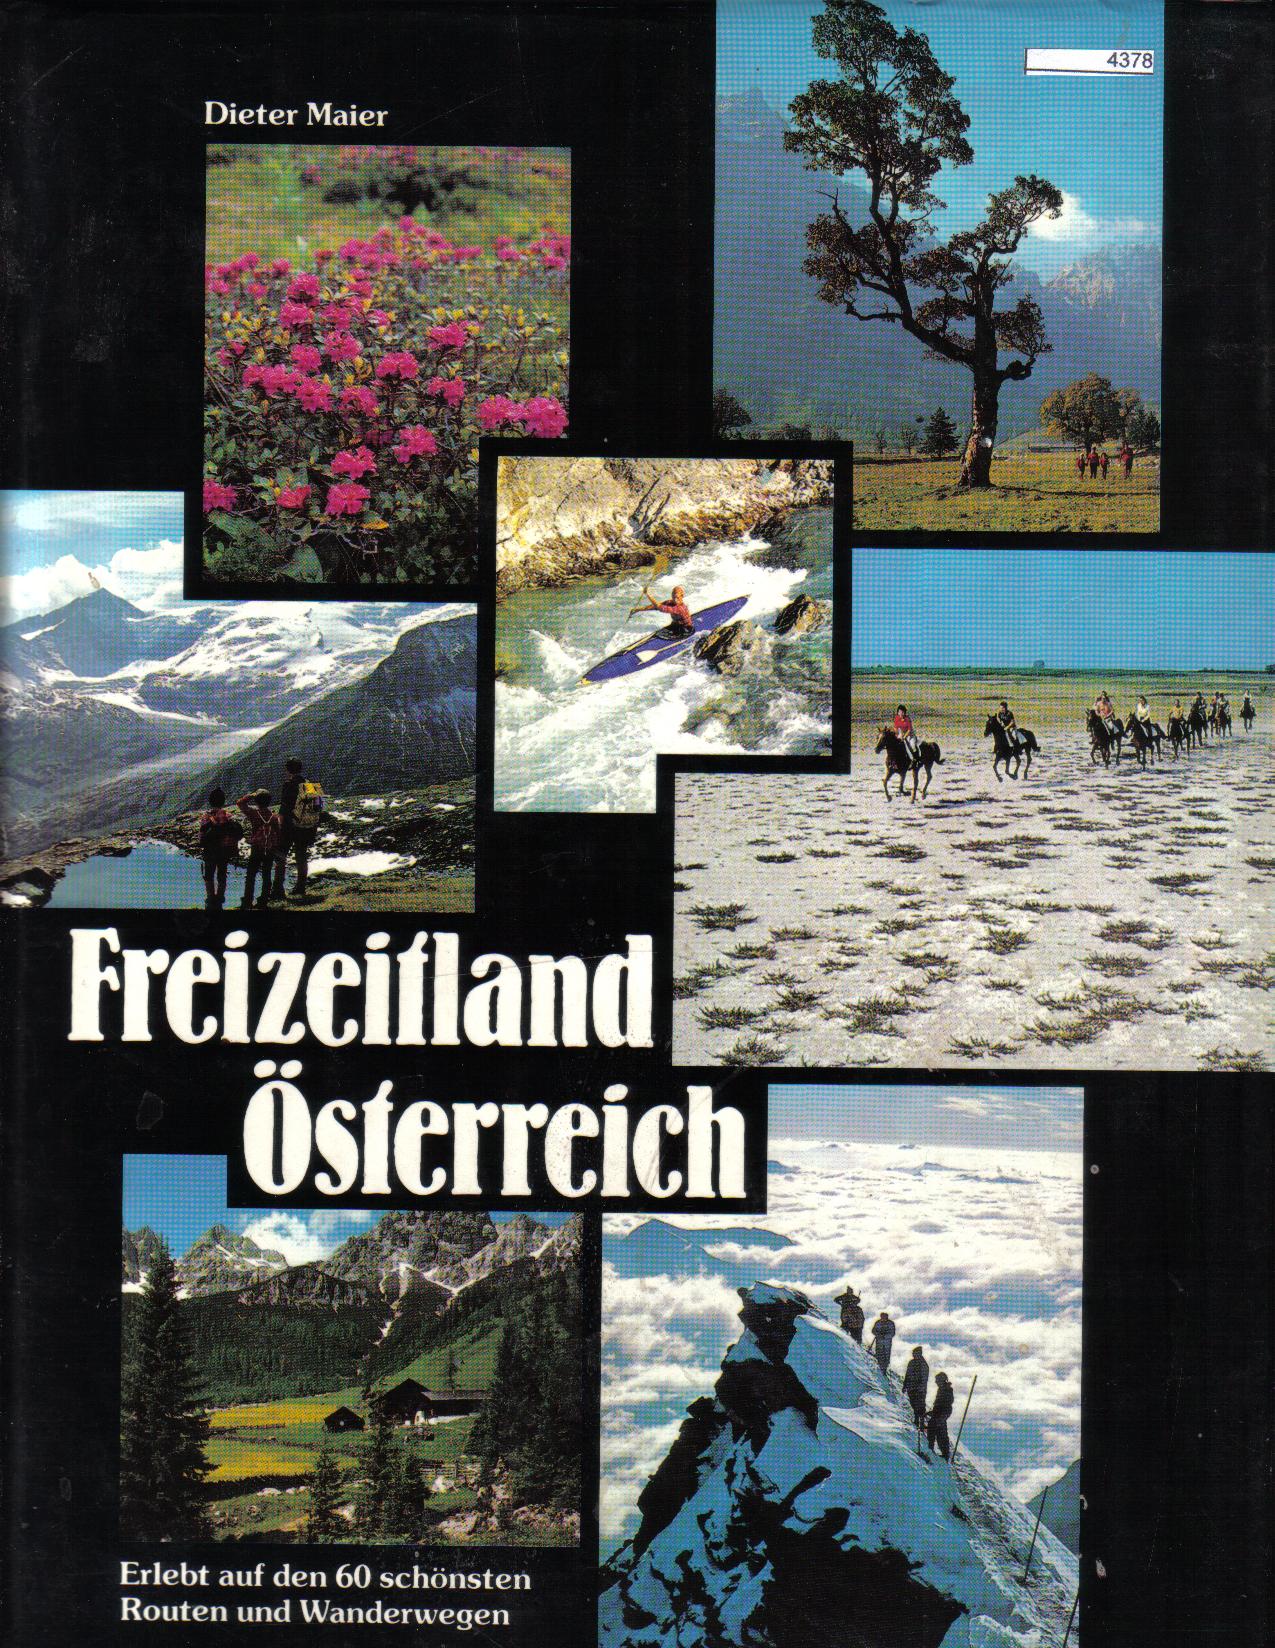 Freizeitland Oesterreich Dieter Maier